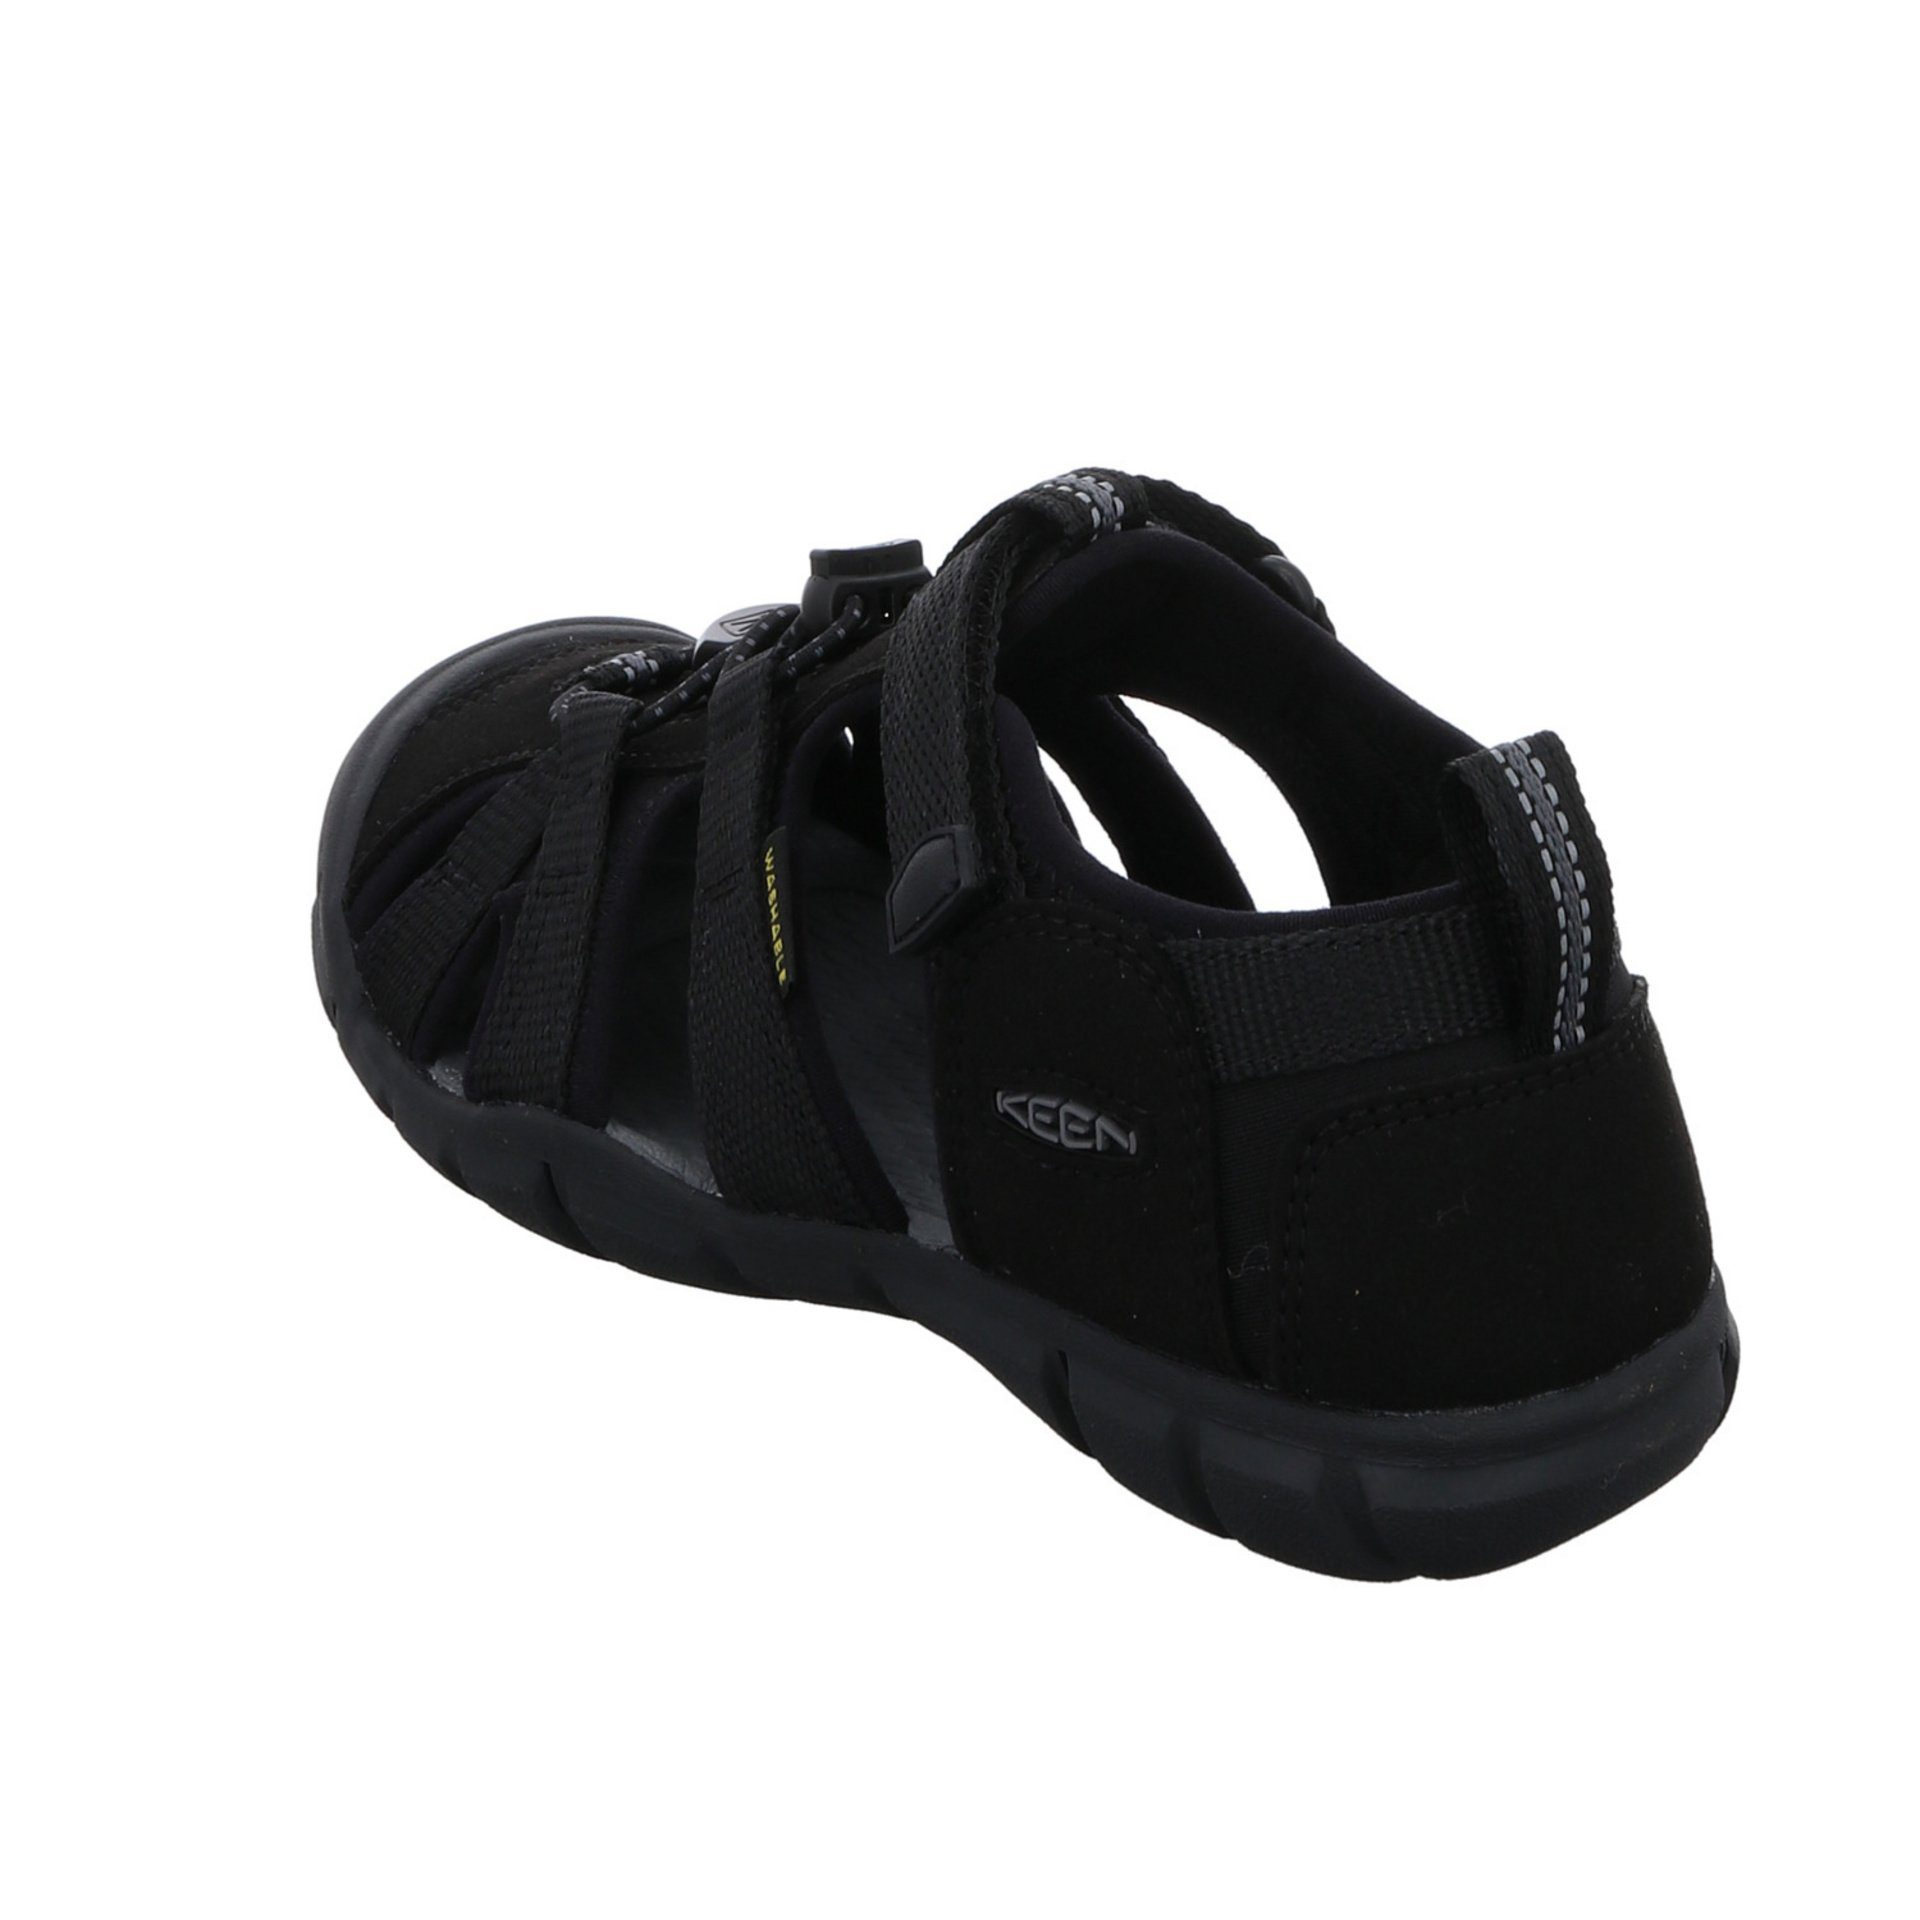 schwarz Textil Sandalen Schuhe dunkel Jungen Keen Sandale